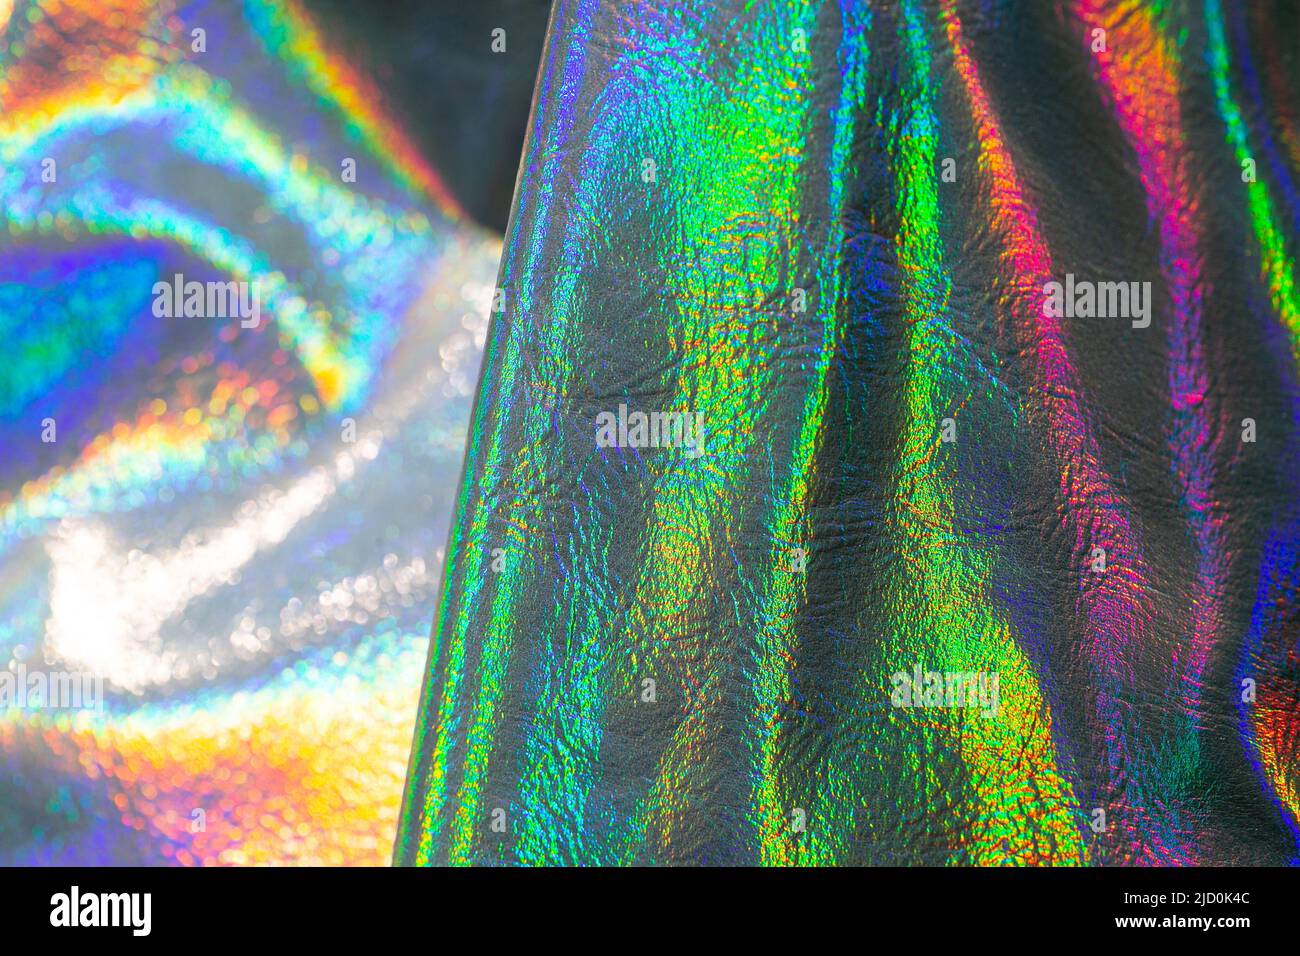 Holografische Tapete in Silber, Lila und Grün. Struktur mit Wellen und folds.beautiful metallisch glänzendem Stoff. Trendiger holografischer Hintergrund Stockfoto